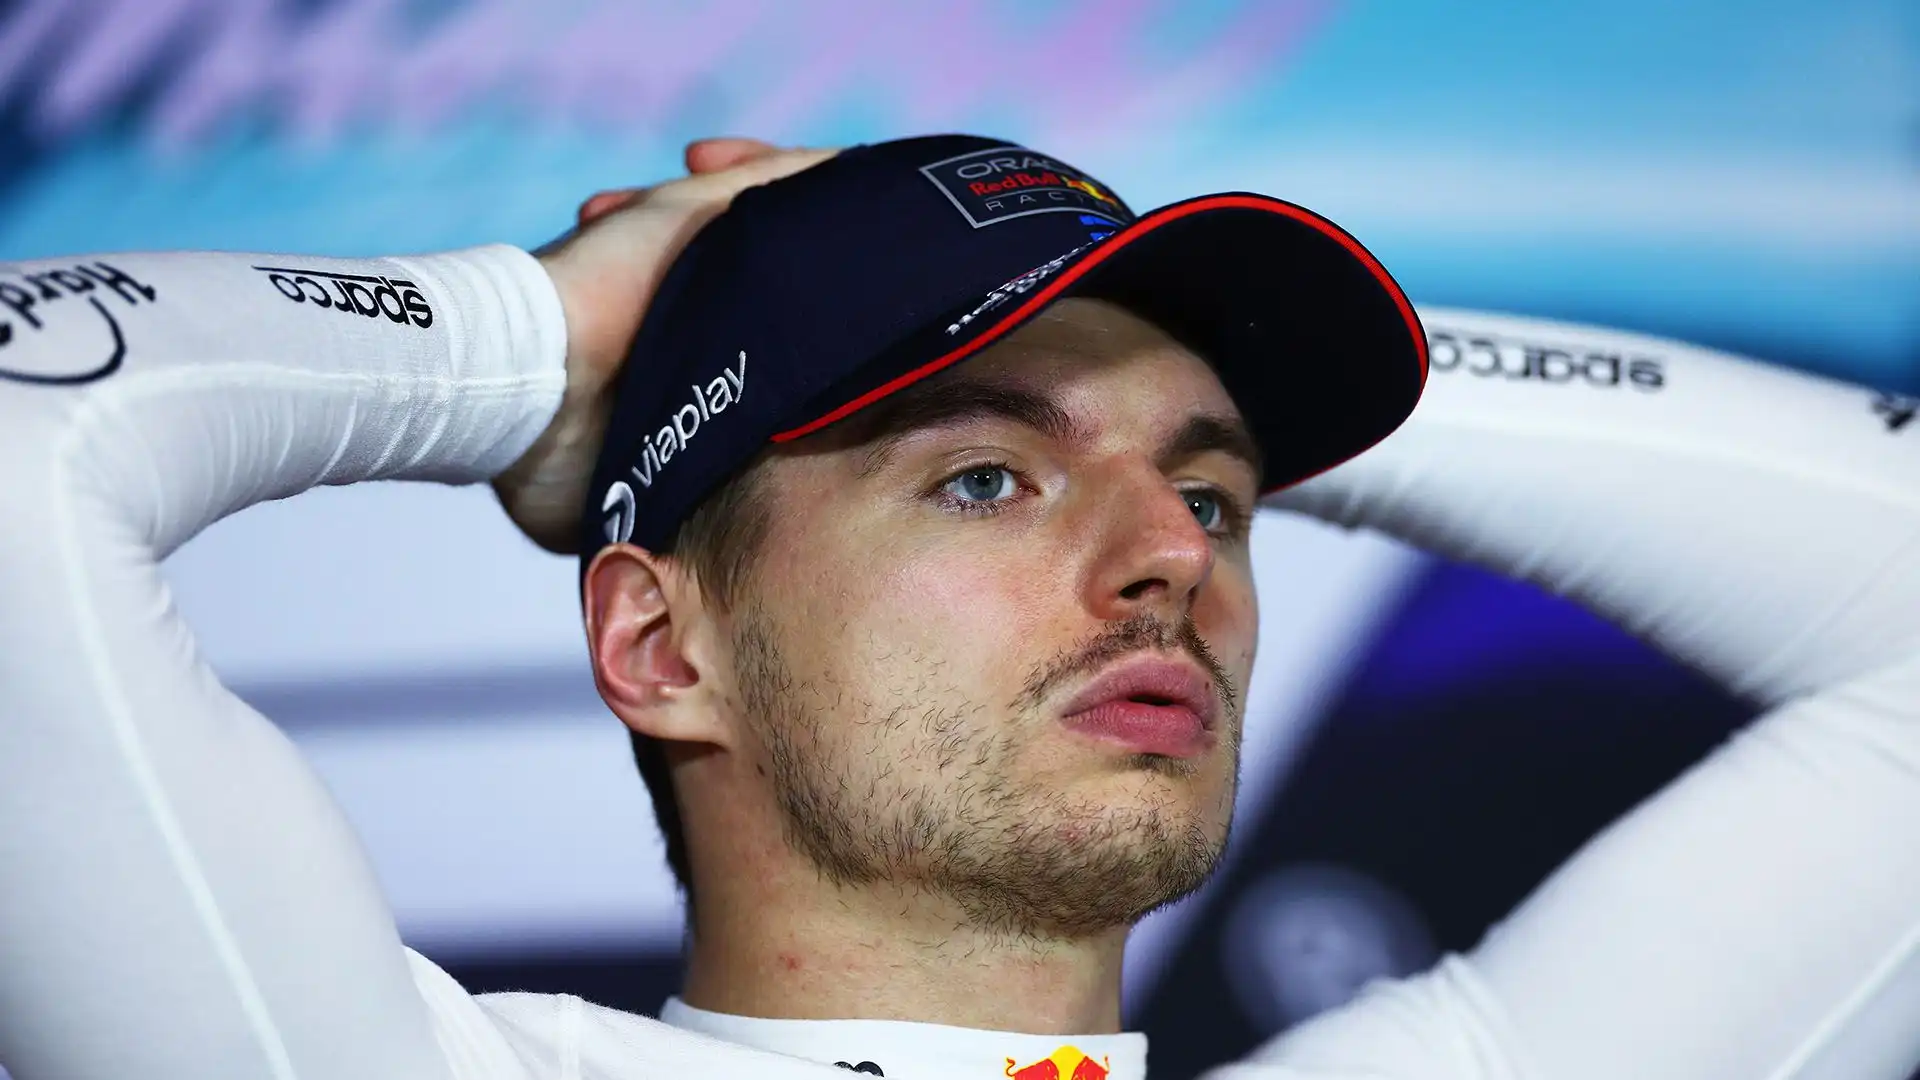 Arrivato secondo nel Gran Premio di Miami, Max Verstappen ha segnalato alcune criticità della sua Red Bull